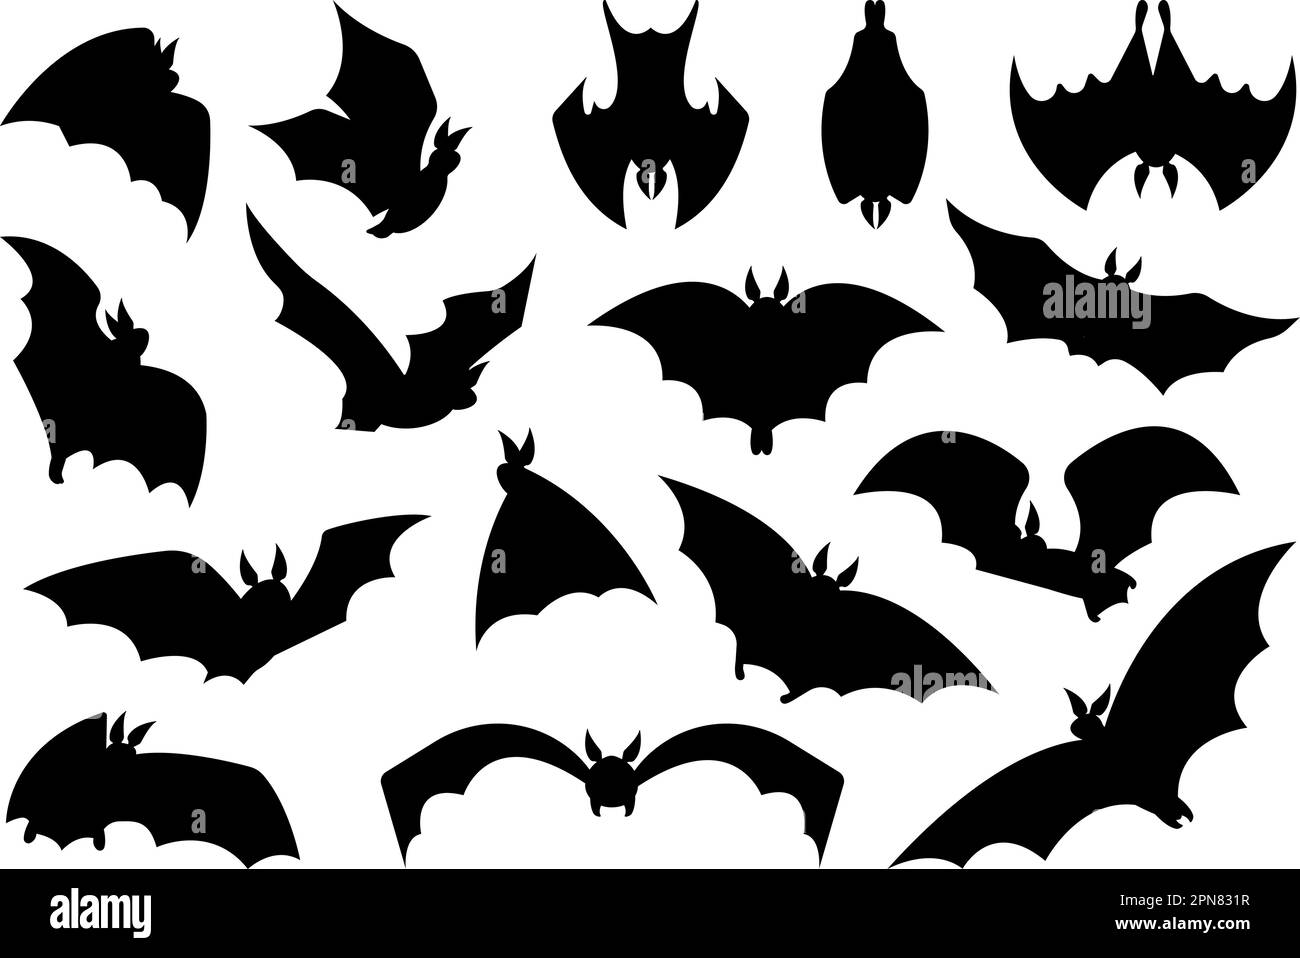 Fliegende Fledermaus schwarze Silhouetten, Fledermäuse halloween-Symbole schwärmen. Gruselige Vampire, gotische Horror-Grafik. Isolierte Tiere, anständige Vektorclipart Stock Vektor